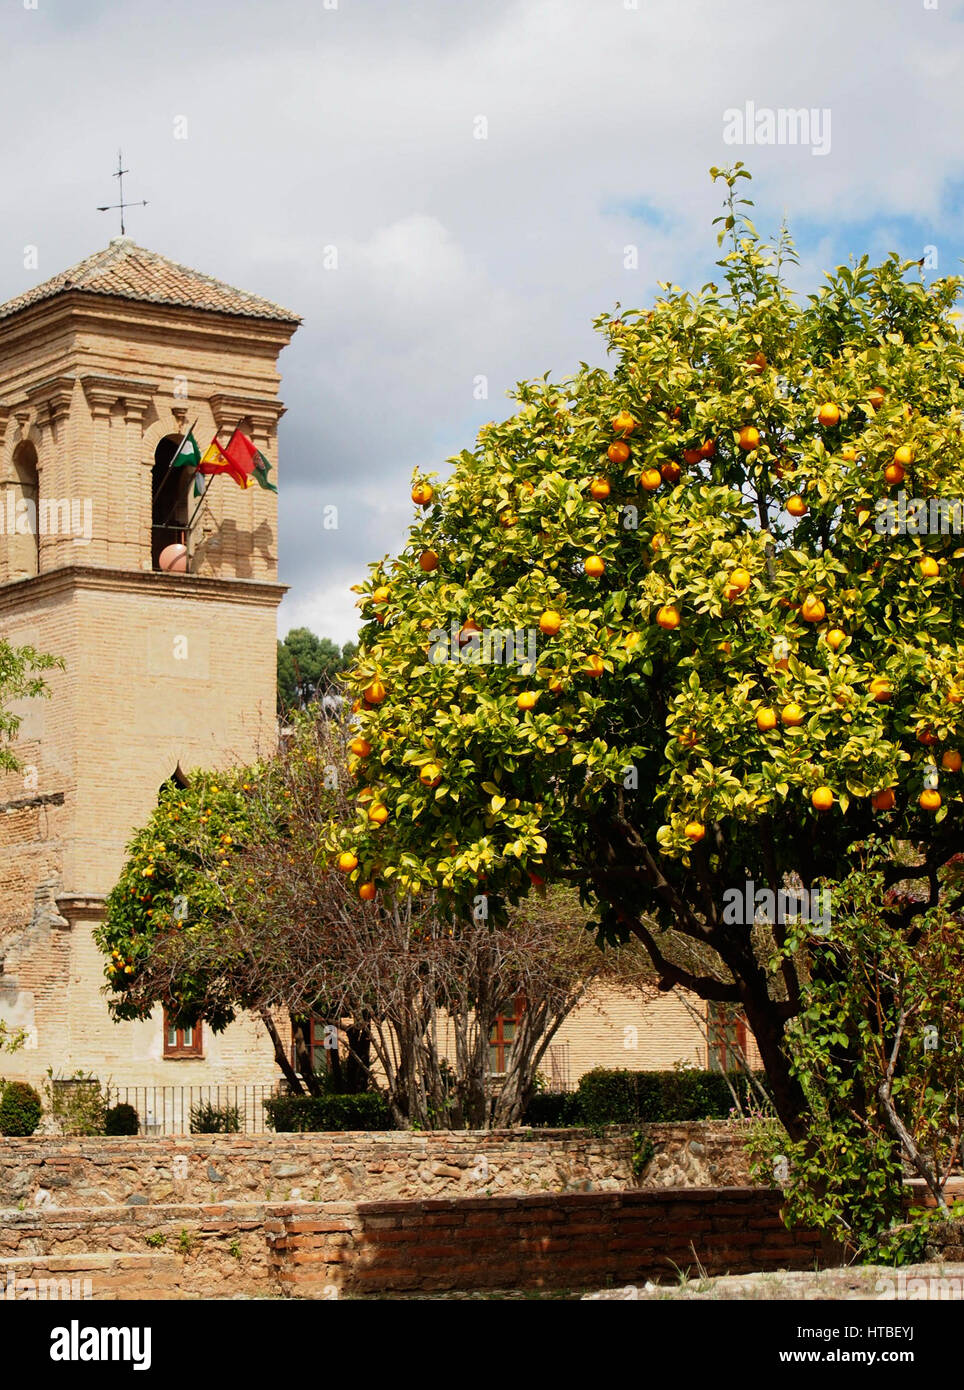 Un oranger avec des fruits à l'Alhambra à Grenade, Espagne fort. Banque D'Images